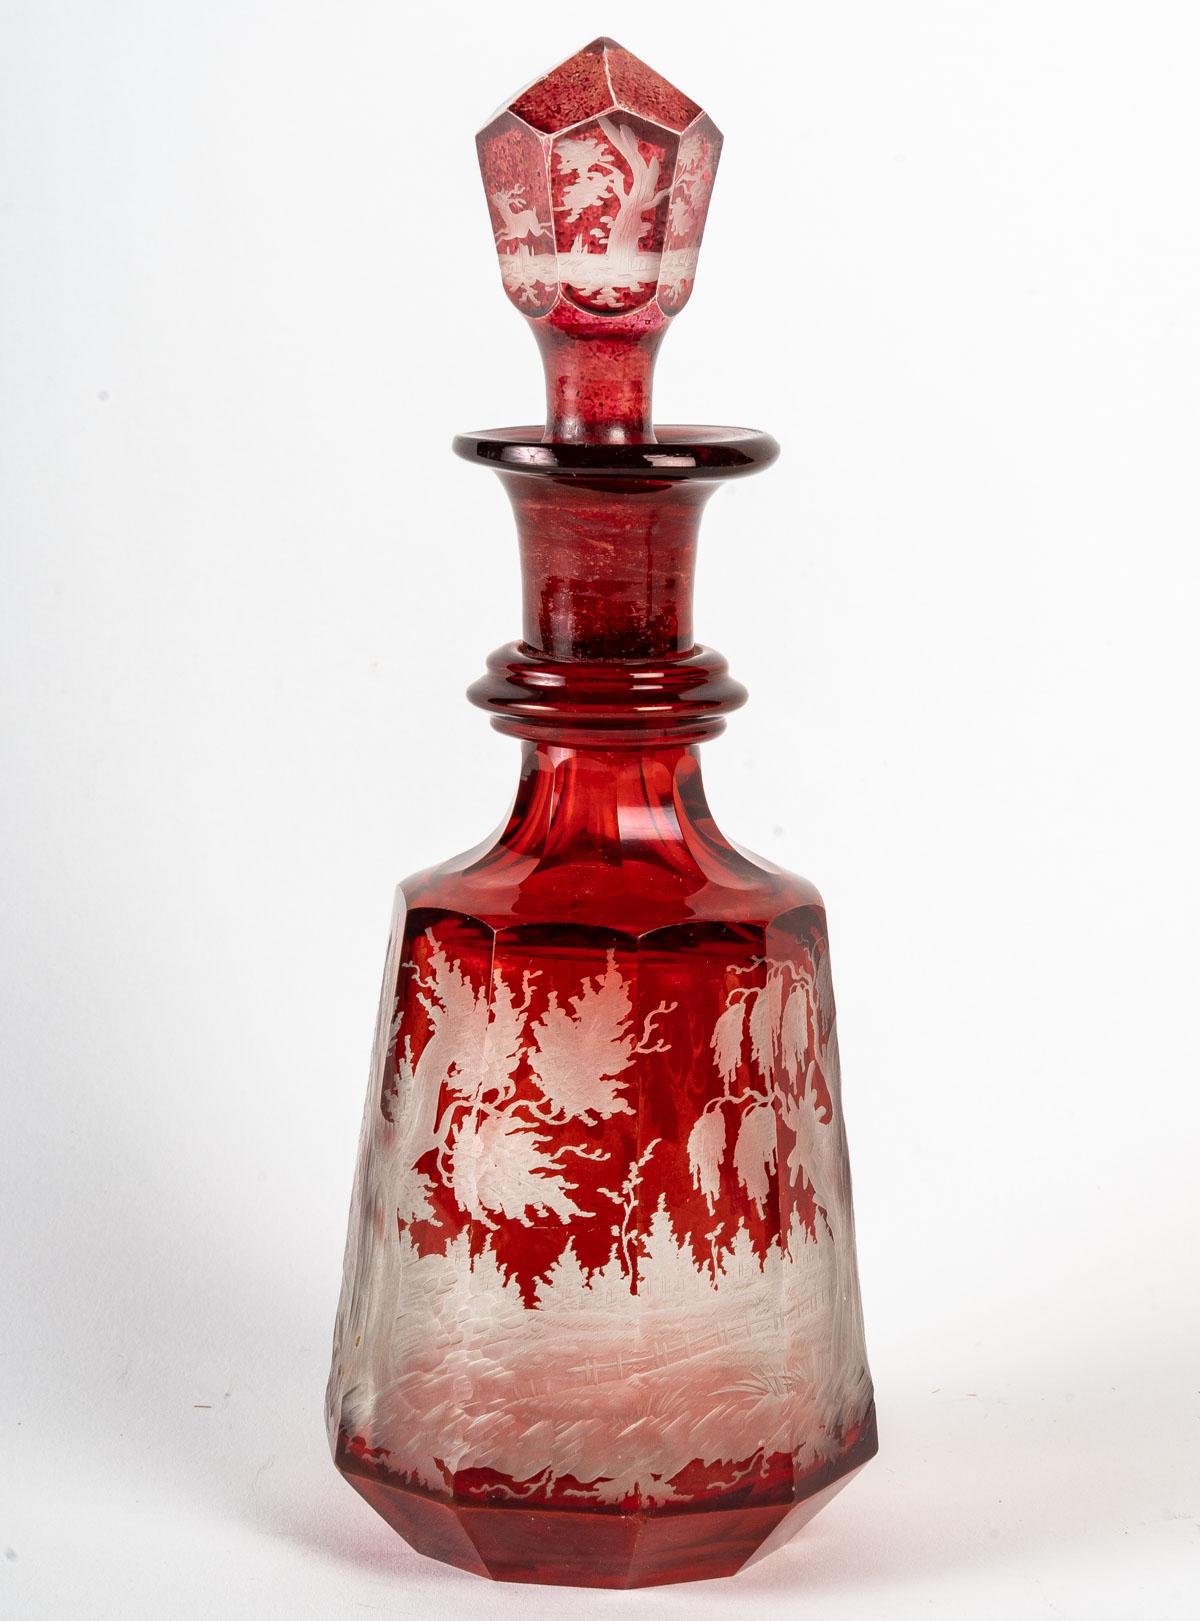 Service en cristal de Bohème rouge, 19e siècle
Service en cristal de Bohême comprenant un plateau, 6 verres et une carafe, gravés d'une scène de chasse. XIXème siècle.
H : 21 cm, L : 38 cm, P : 23 cm
3046.